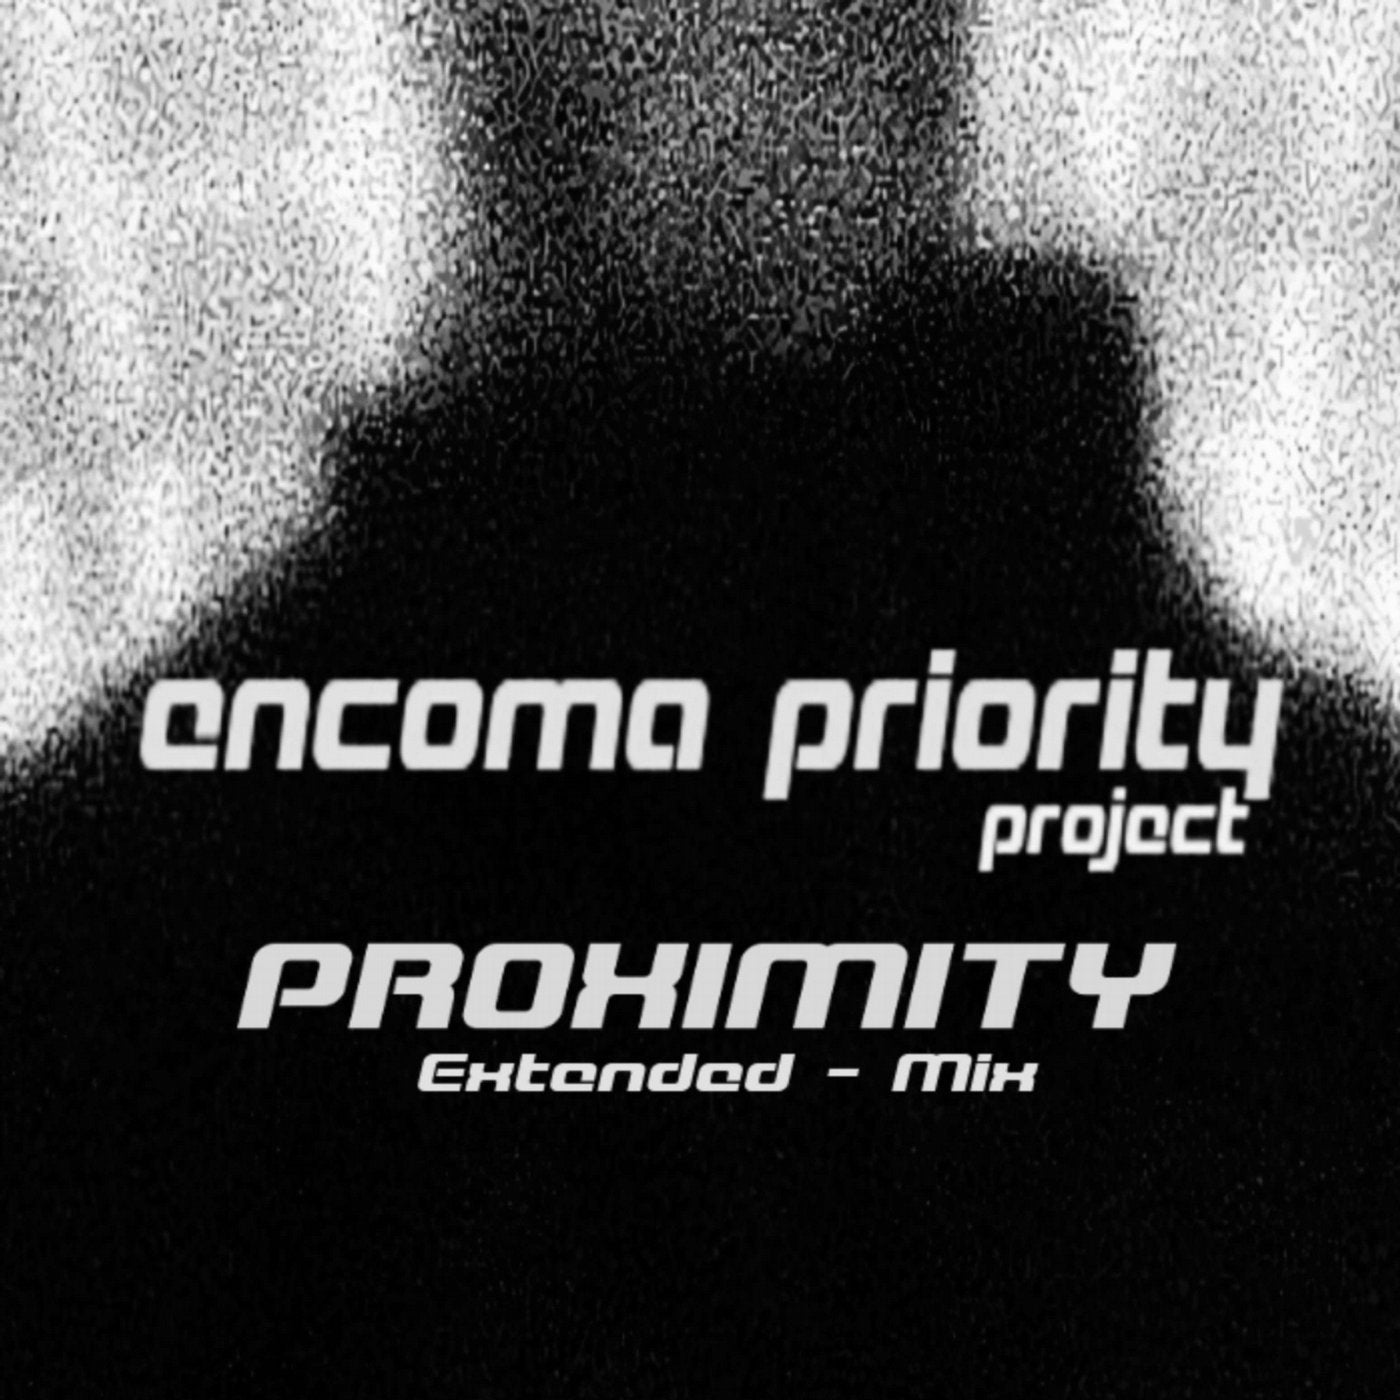 Proximity (Extended - Mix)